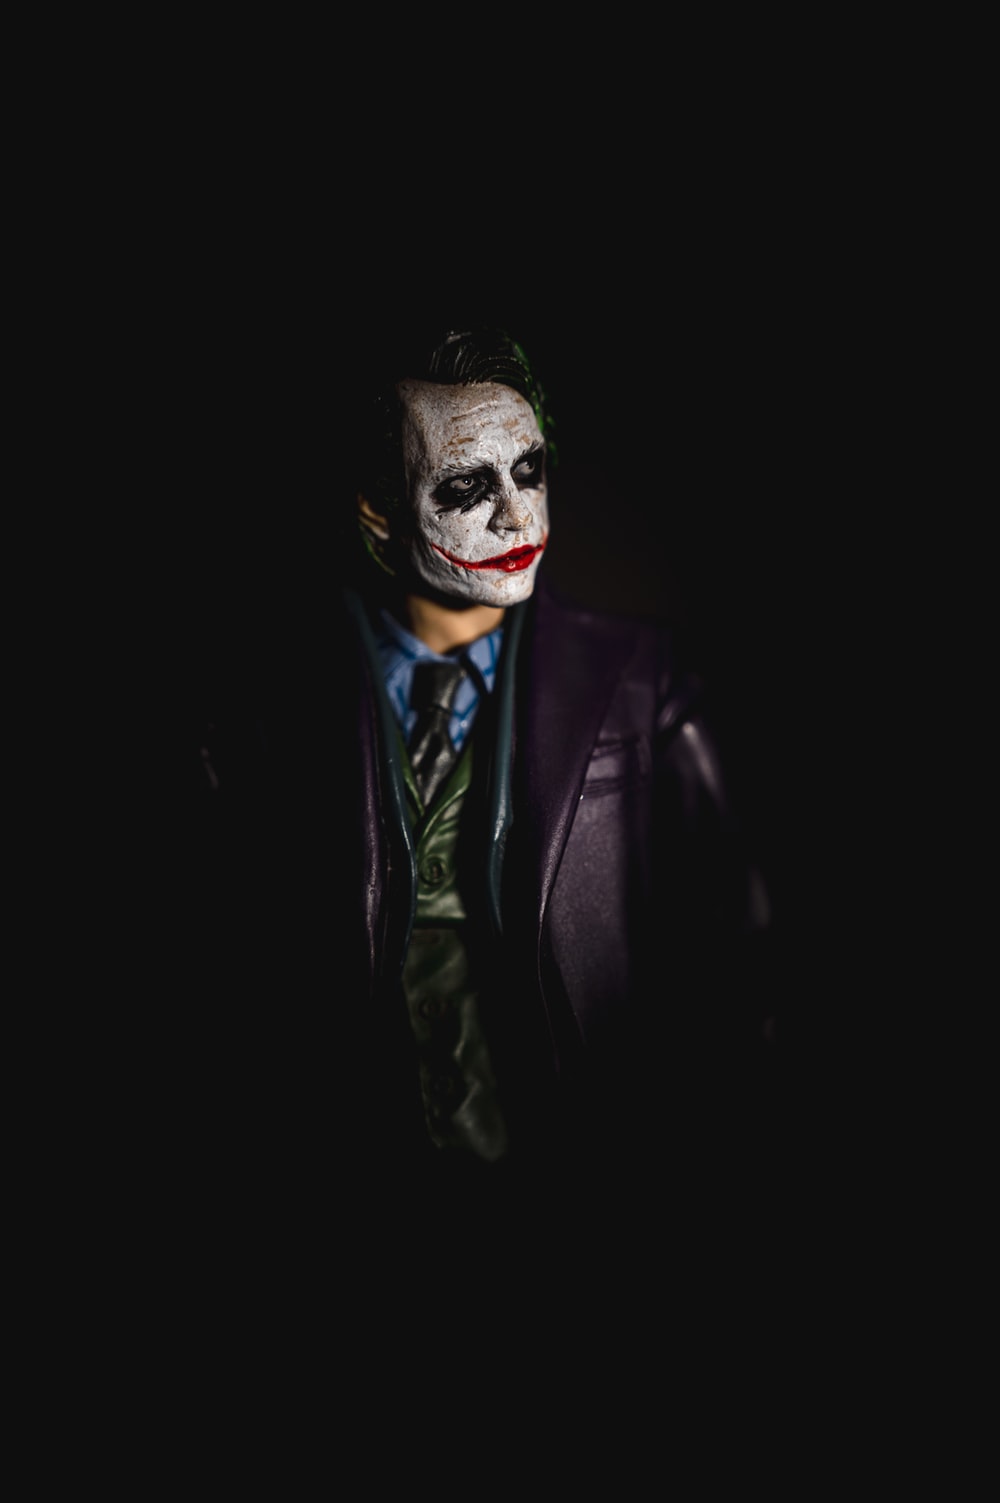 Mr Joker (@joker90402662) / Twitter